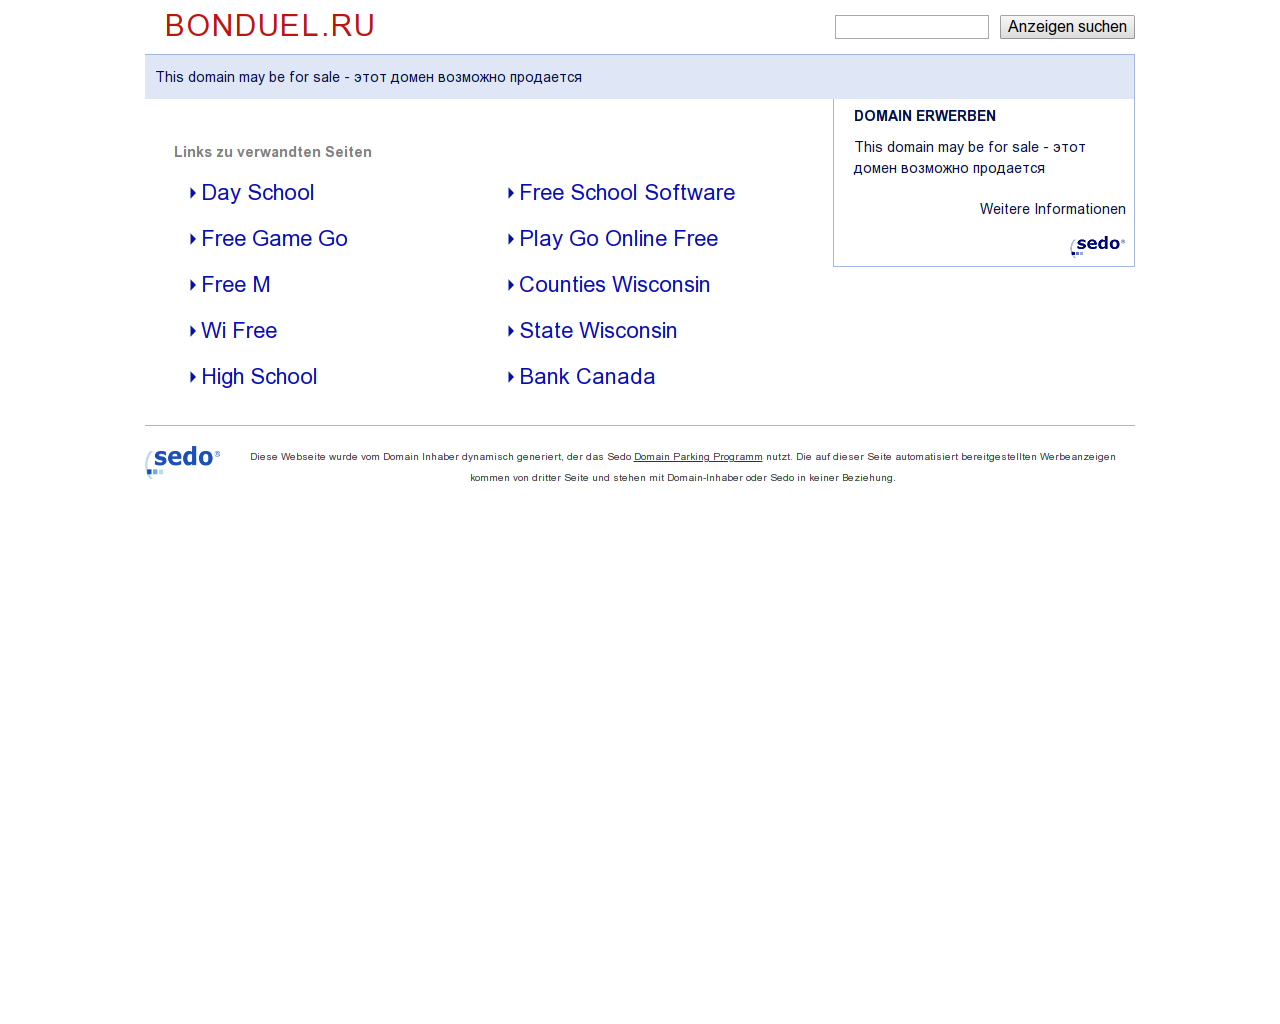 Изображение сайта bonduel.ru в разрешении 1280x1024